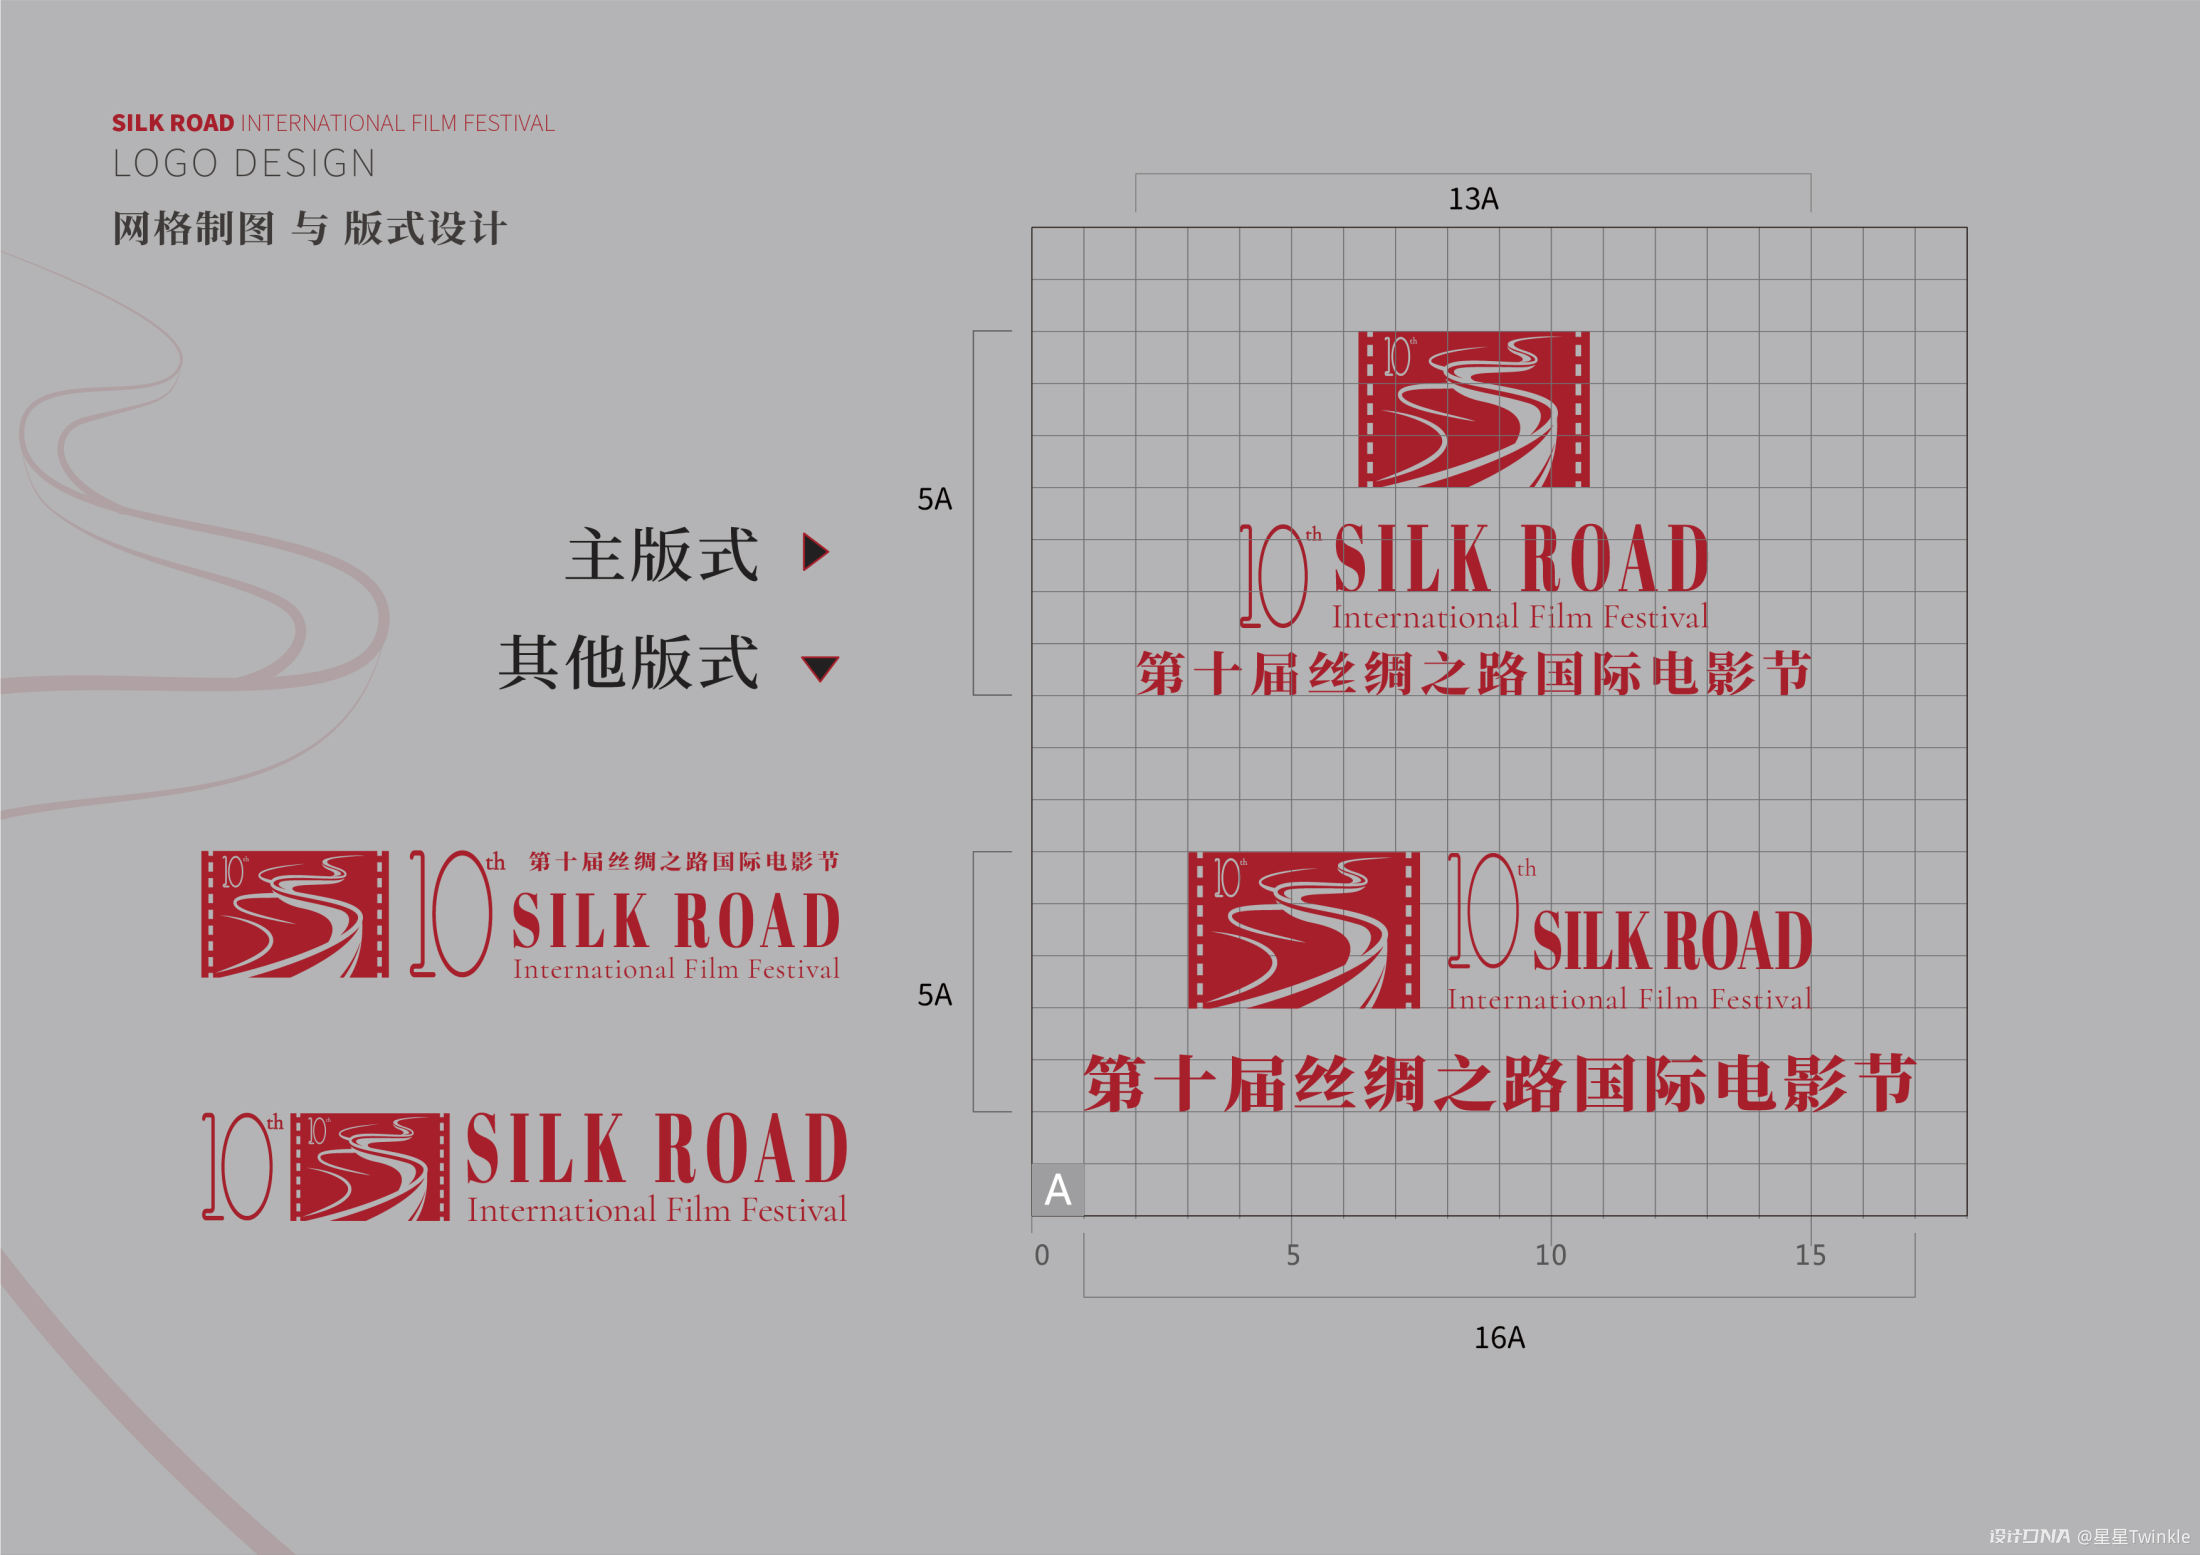 【丝绸之路】—logo及会旗设计方案 图5